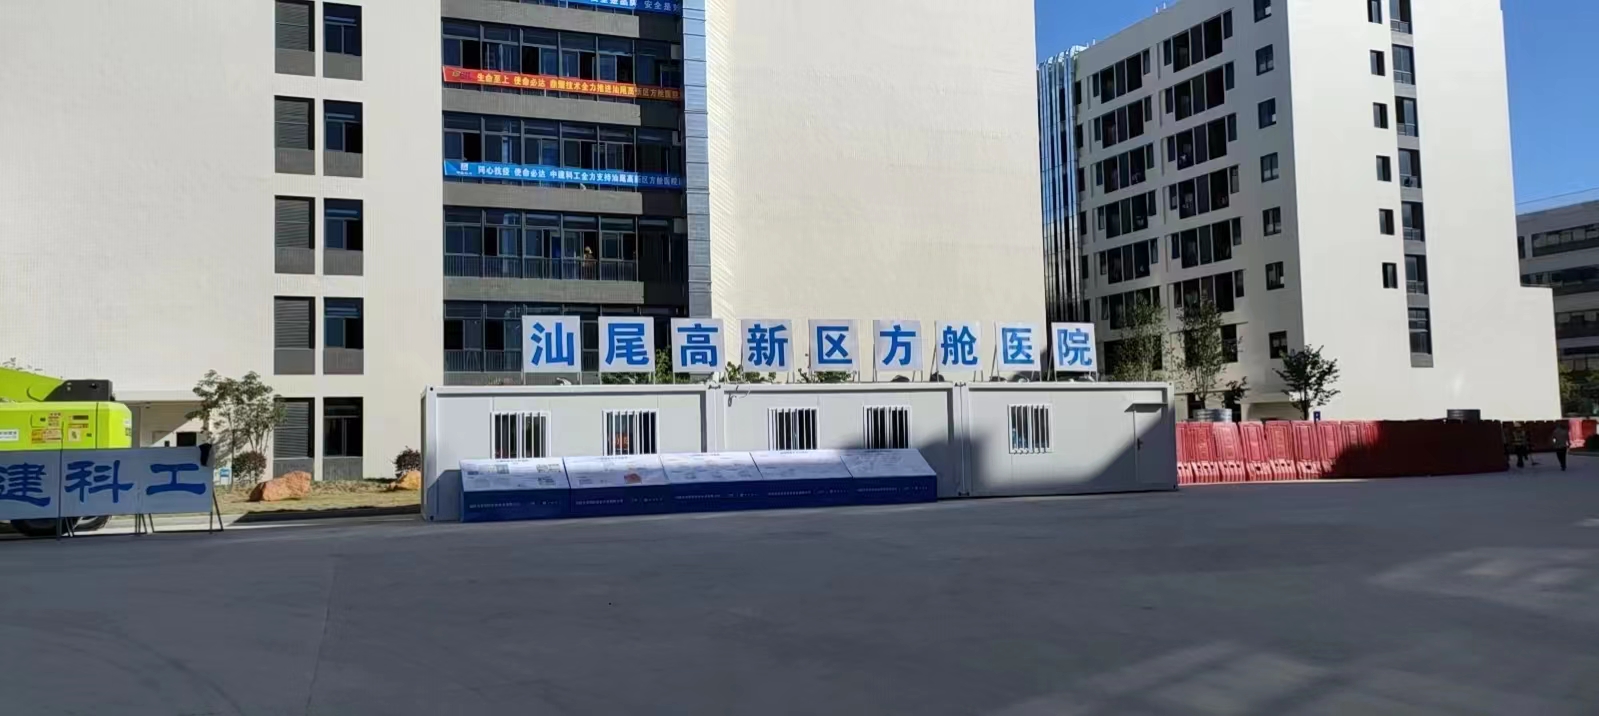 祝賀汕尾高(gāo)新區方艙醫院菲格朗大巴車洗消中心消毒系統完工縮略圖